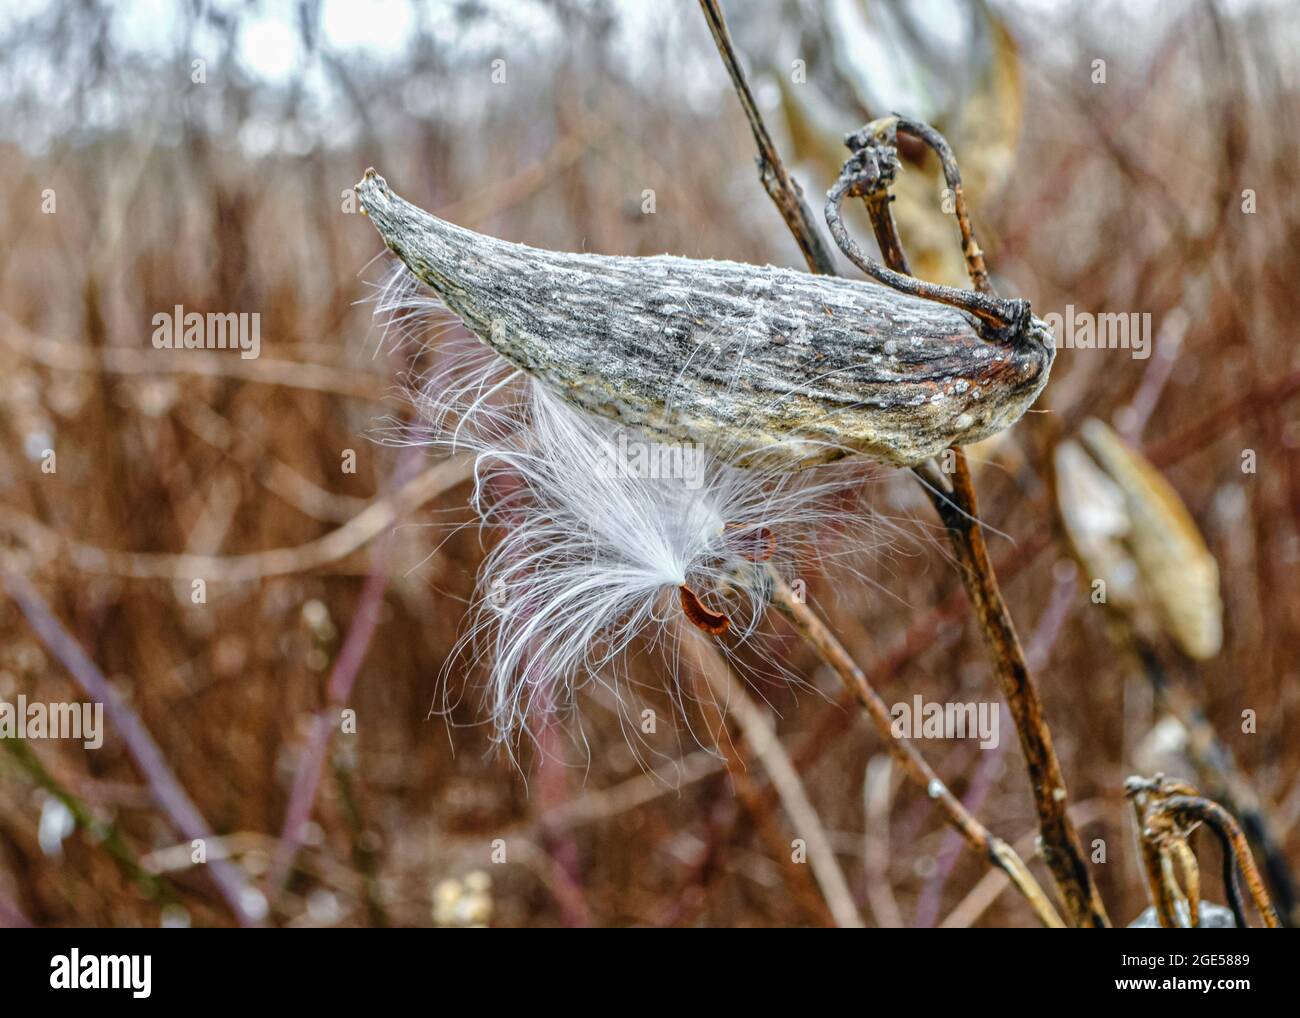 La gousse de graines de moulkaded avec des graines moelleuses blanches commençant à se disperser sur le vent. Gros plan. Banque D'Images